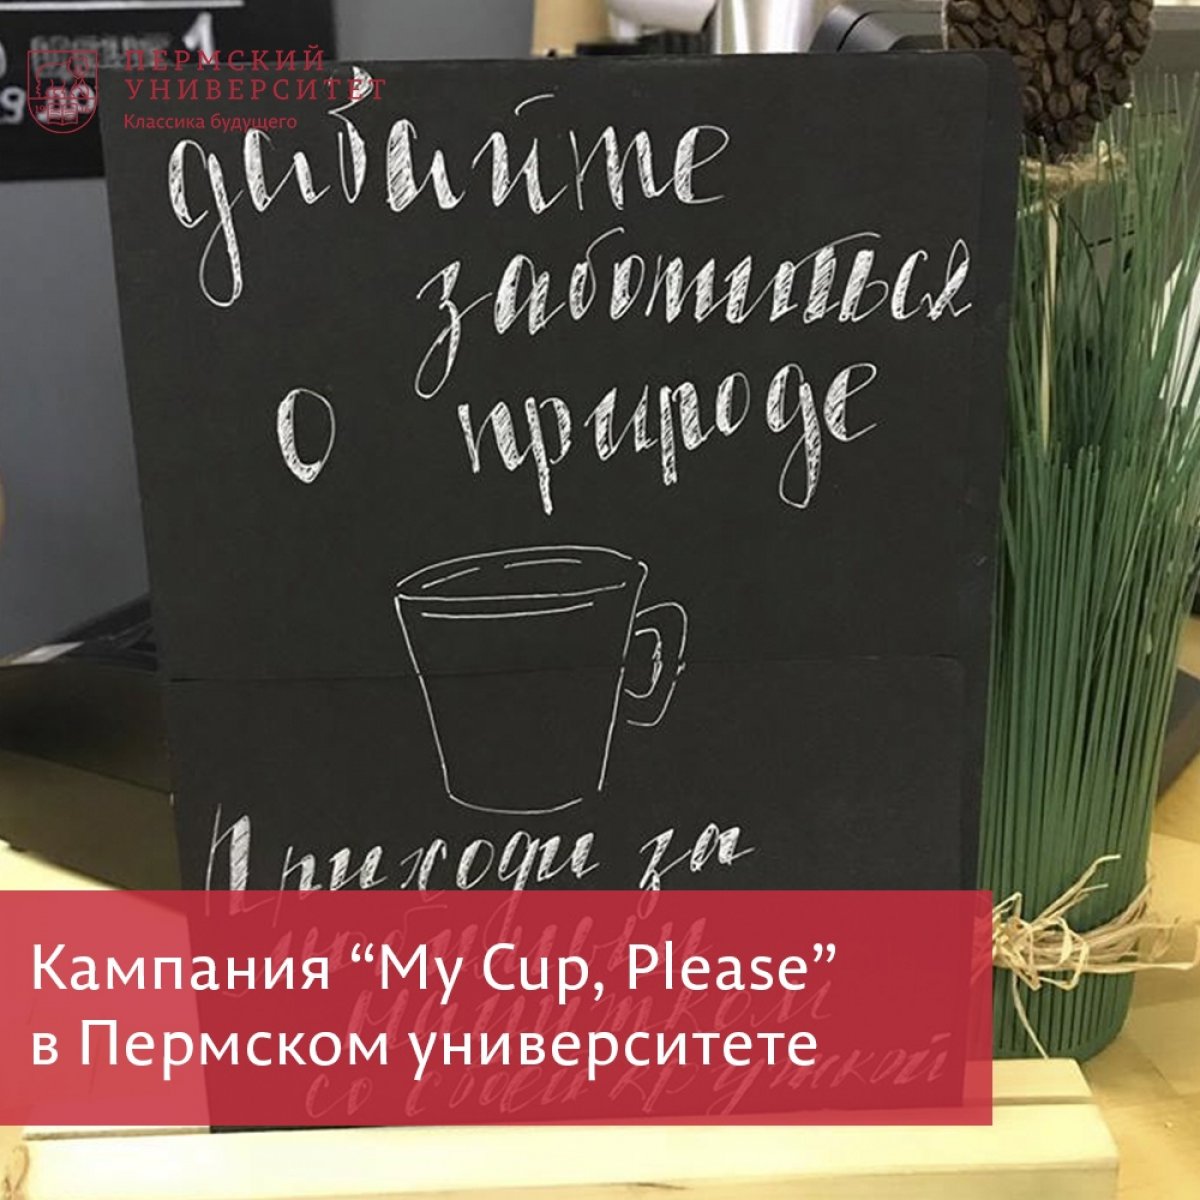 Акция "My Cup, Please" теперь и в Пермском университете